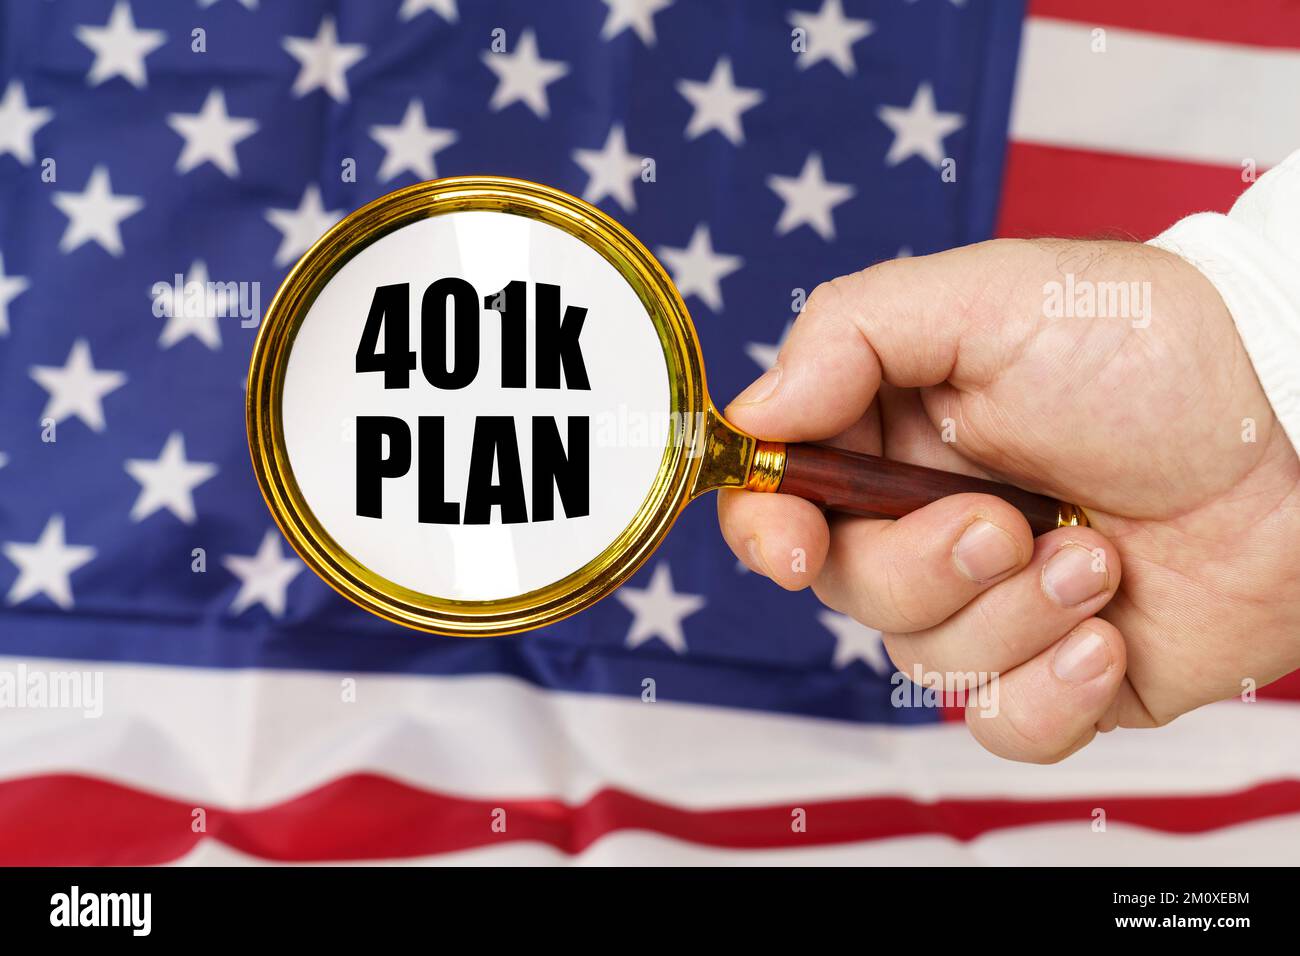 Di fronte alla bandiera americana, un uomo tiene in mano una lente d'ingrandimento con l'iscrizione - piano 401K. Foto Stock